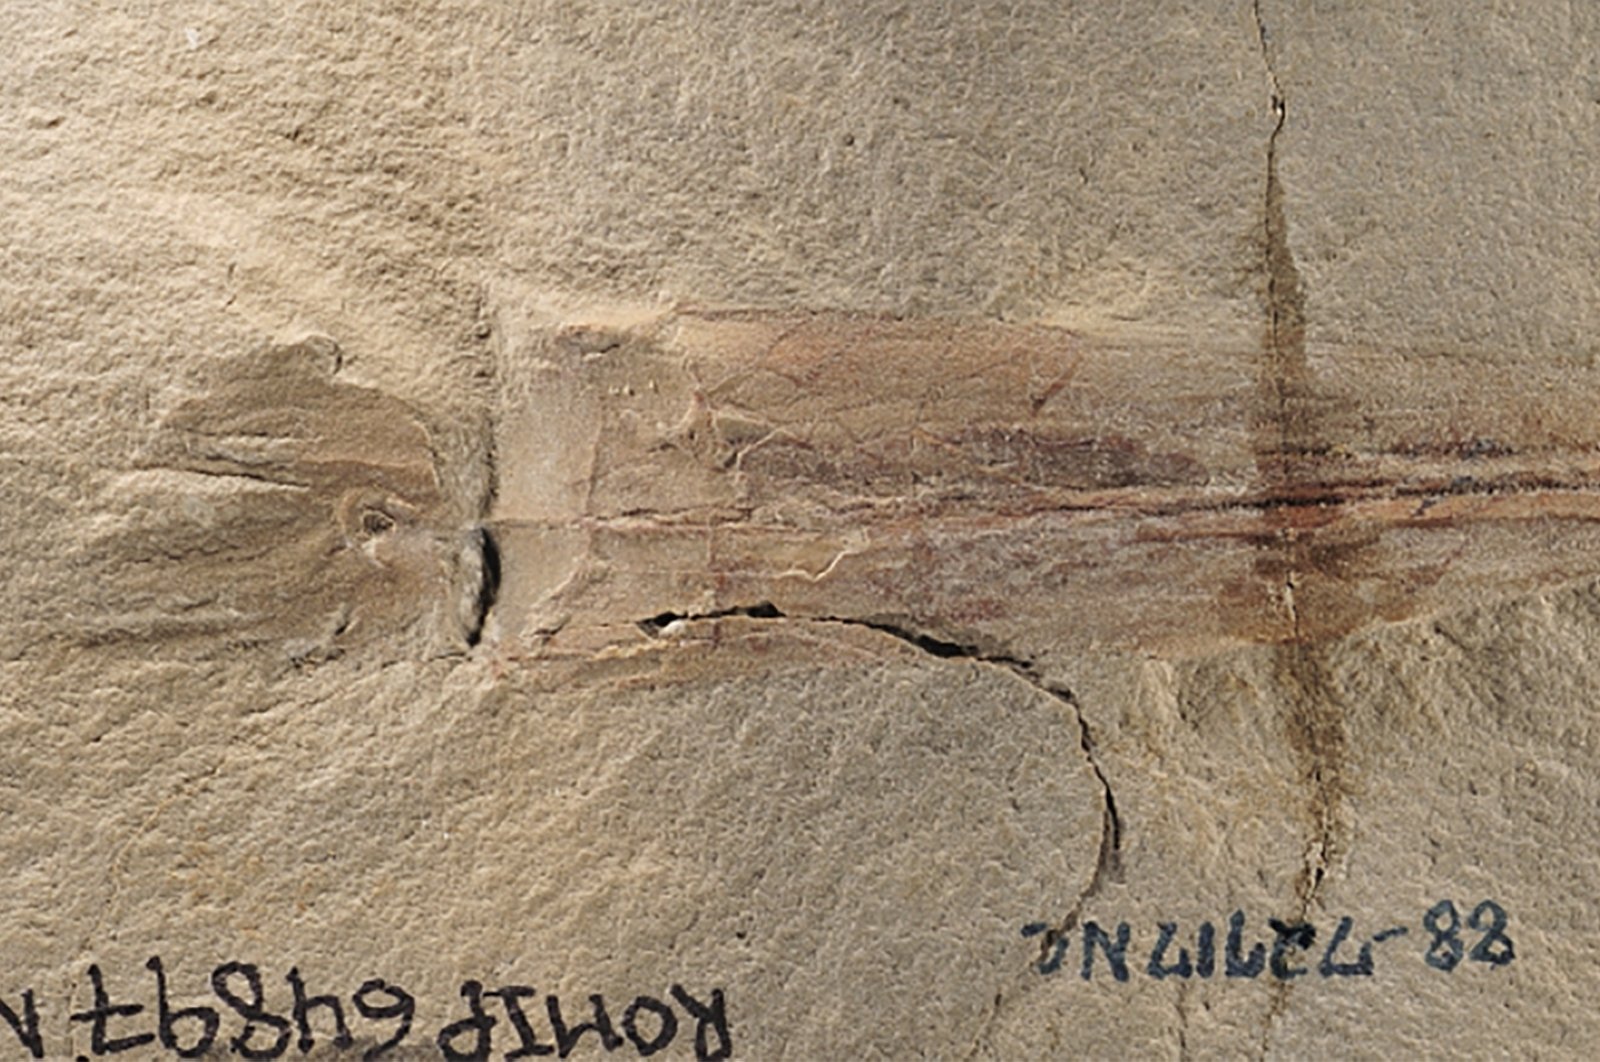 Temui ‘dekapus’: Fosil gurita dengan 10 lengan ditemukan di AS